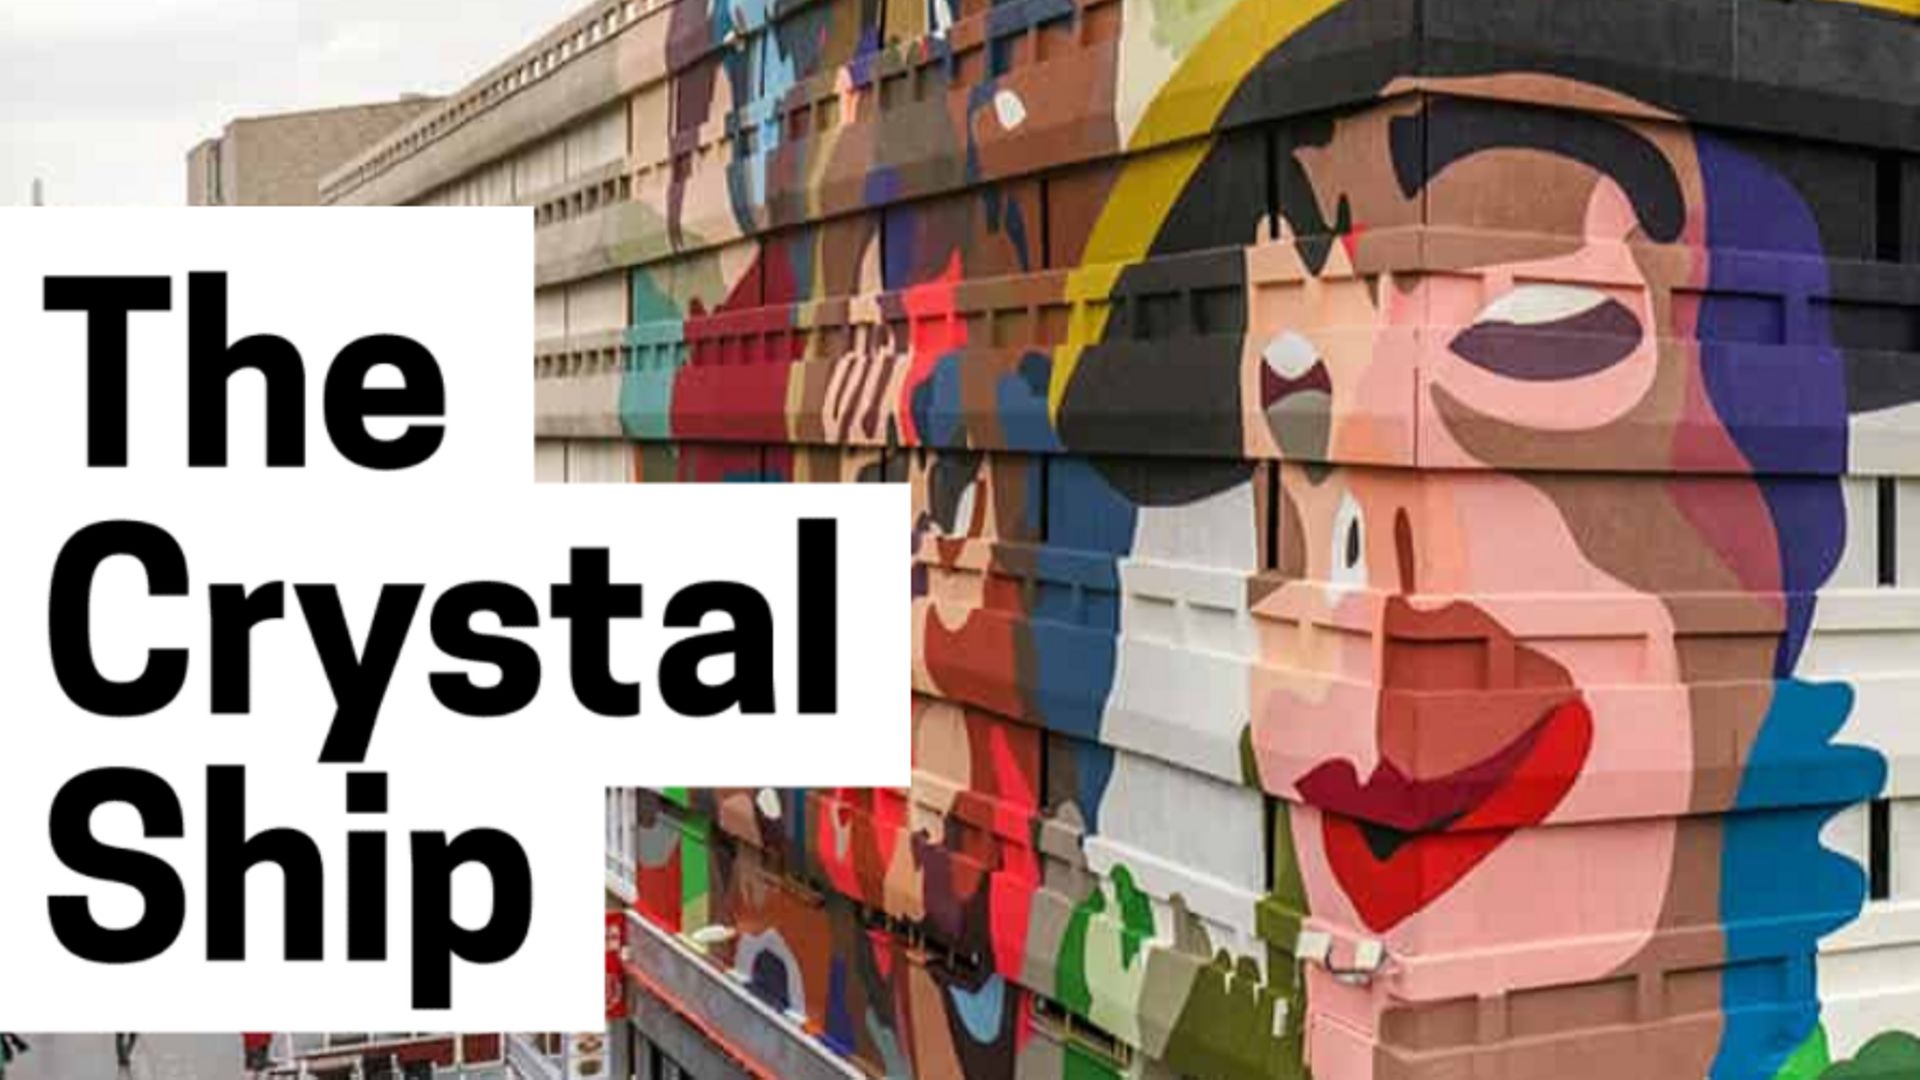 La 7e édition du festival d’arts "The Crystal Ship" a débuté samedi matin dans les rues d’Ostende.